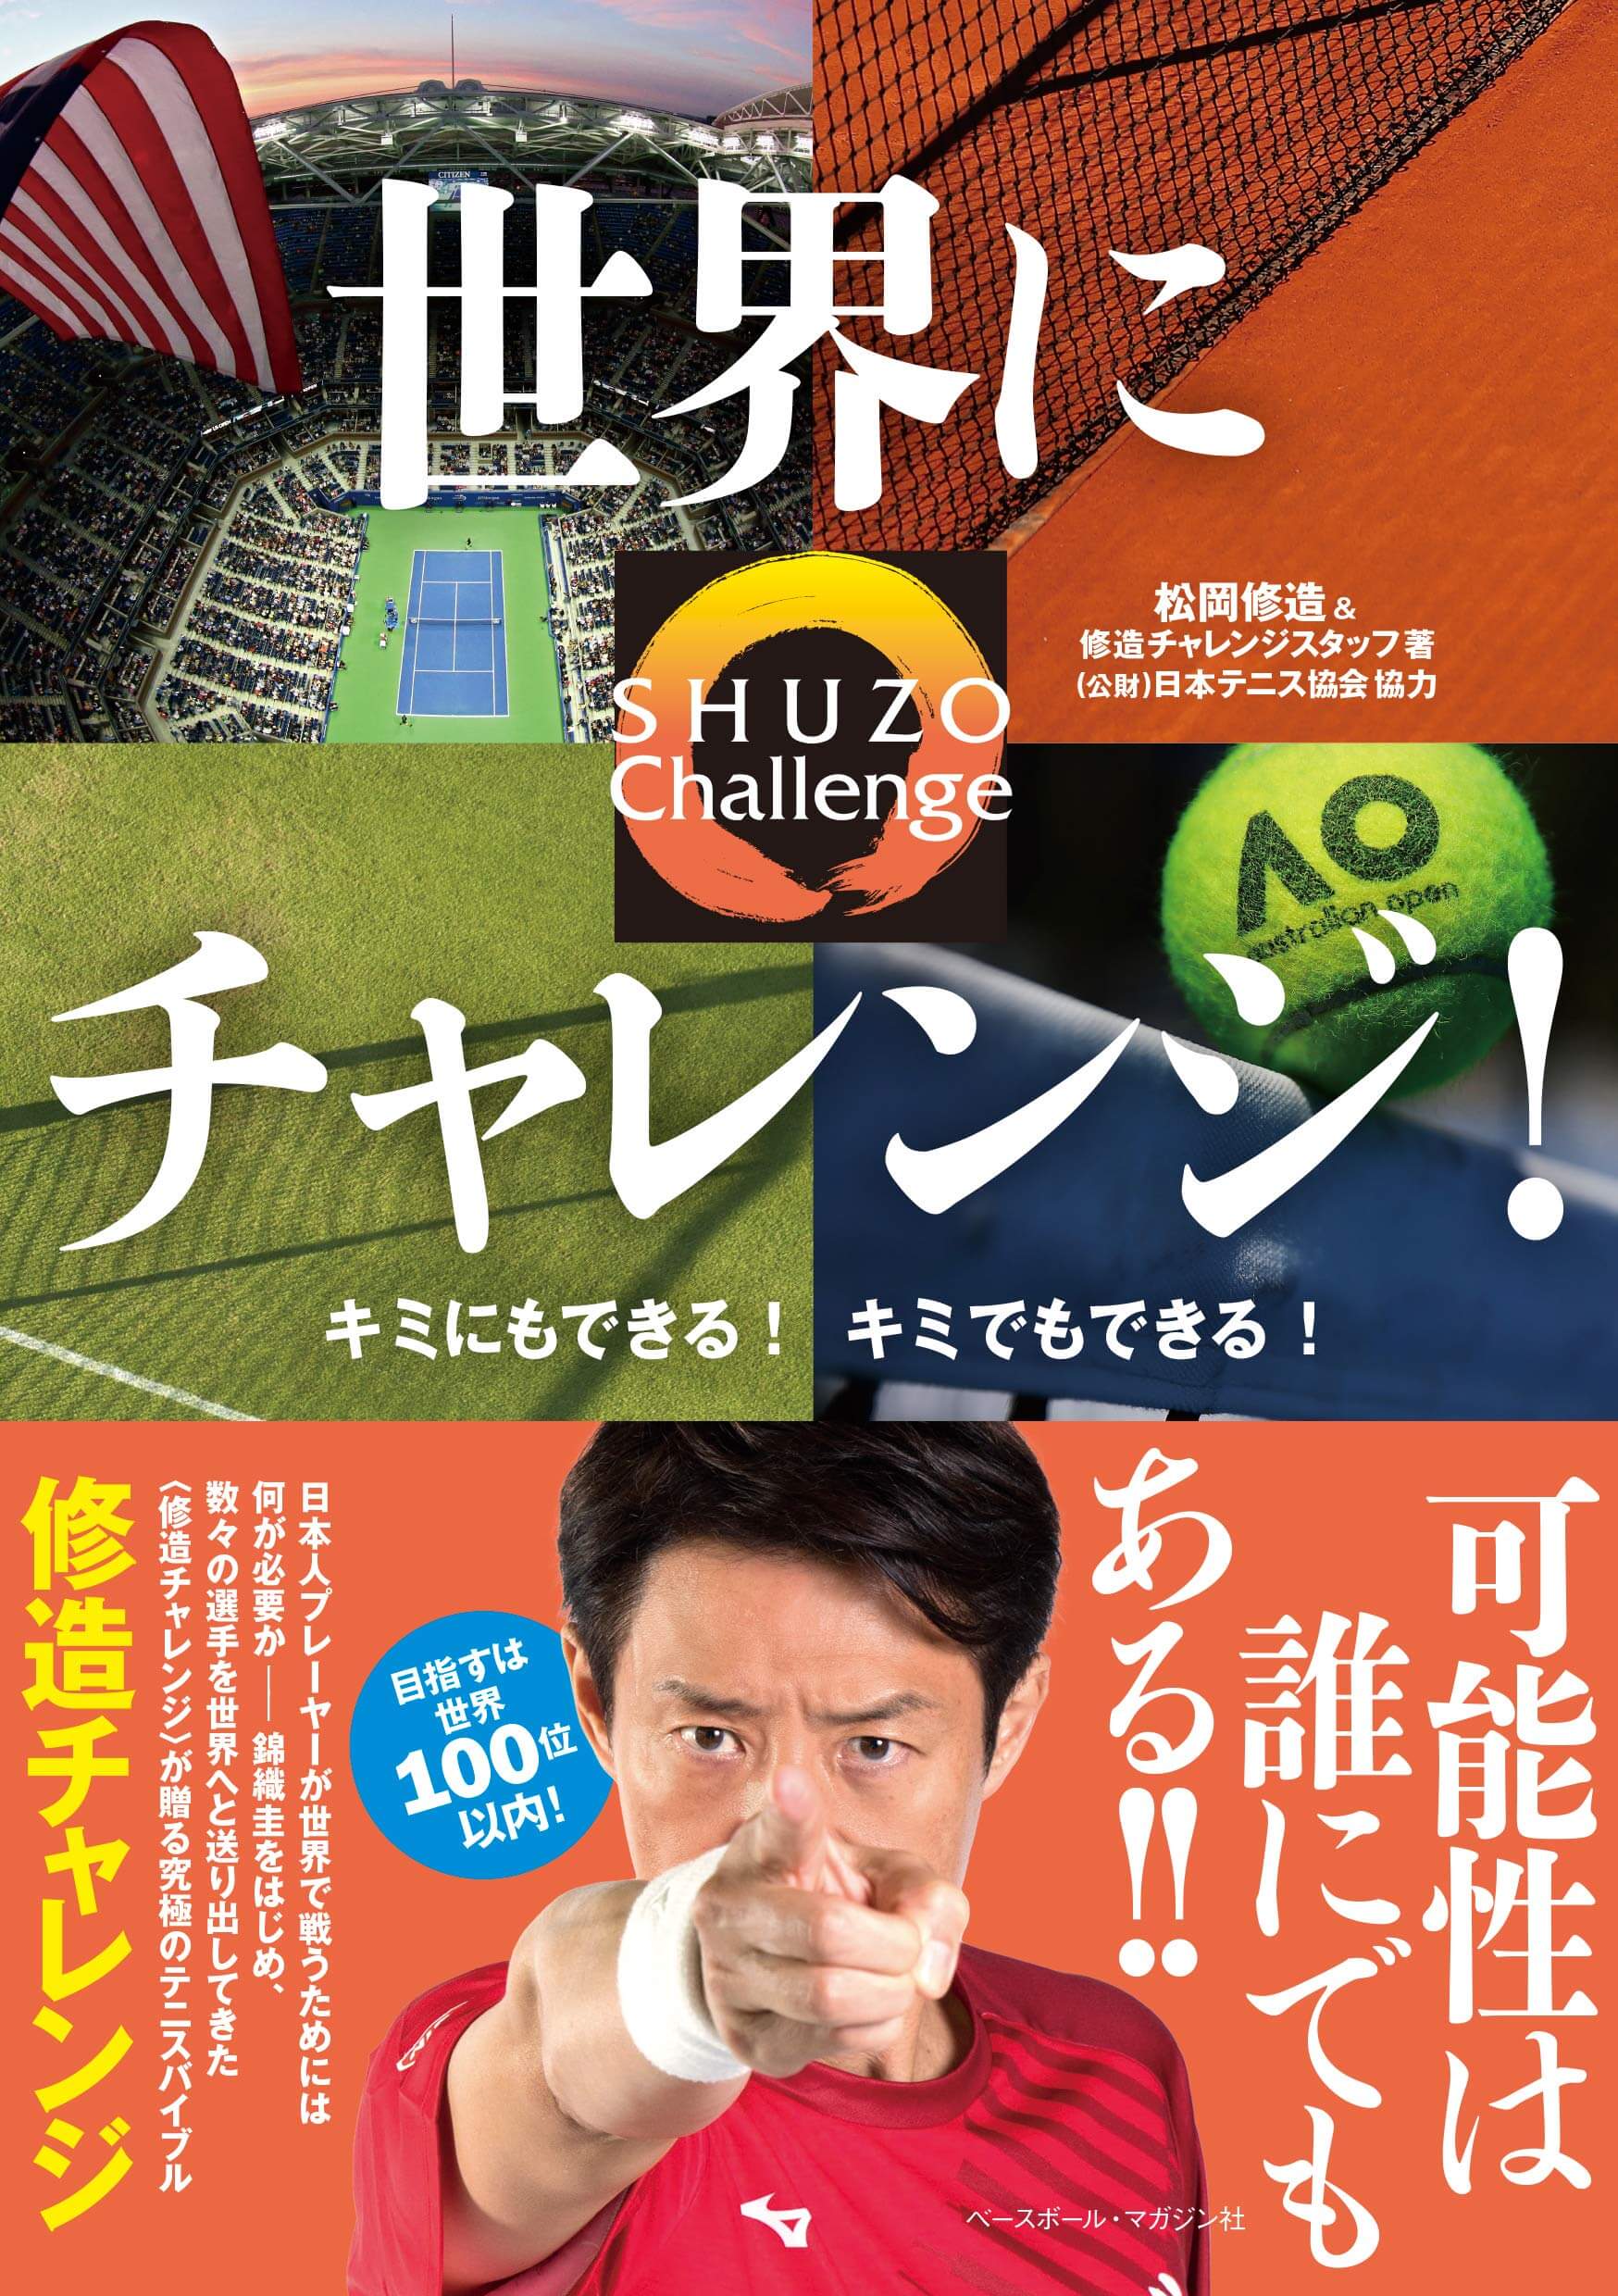 世界にチャレンジ キミにもできる キミでもできる 4月2日発売 松岡修造オフィシャルサイト Shuzo Matsuoka Official Site